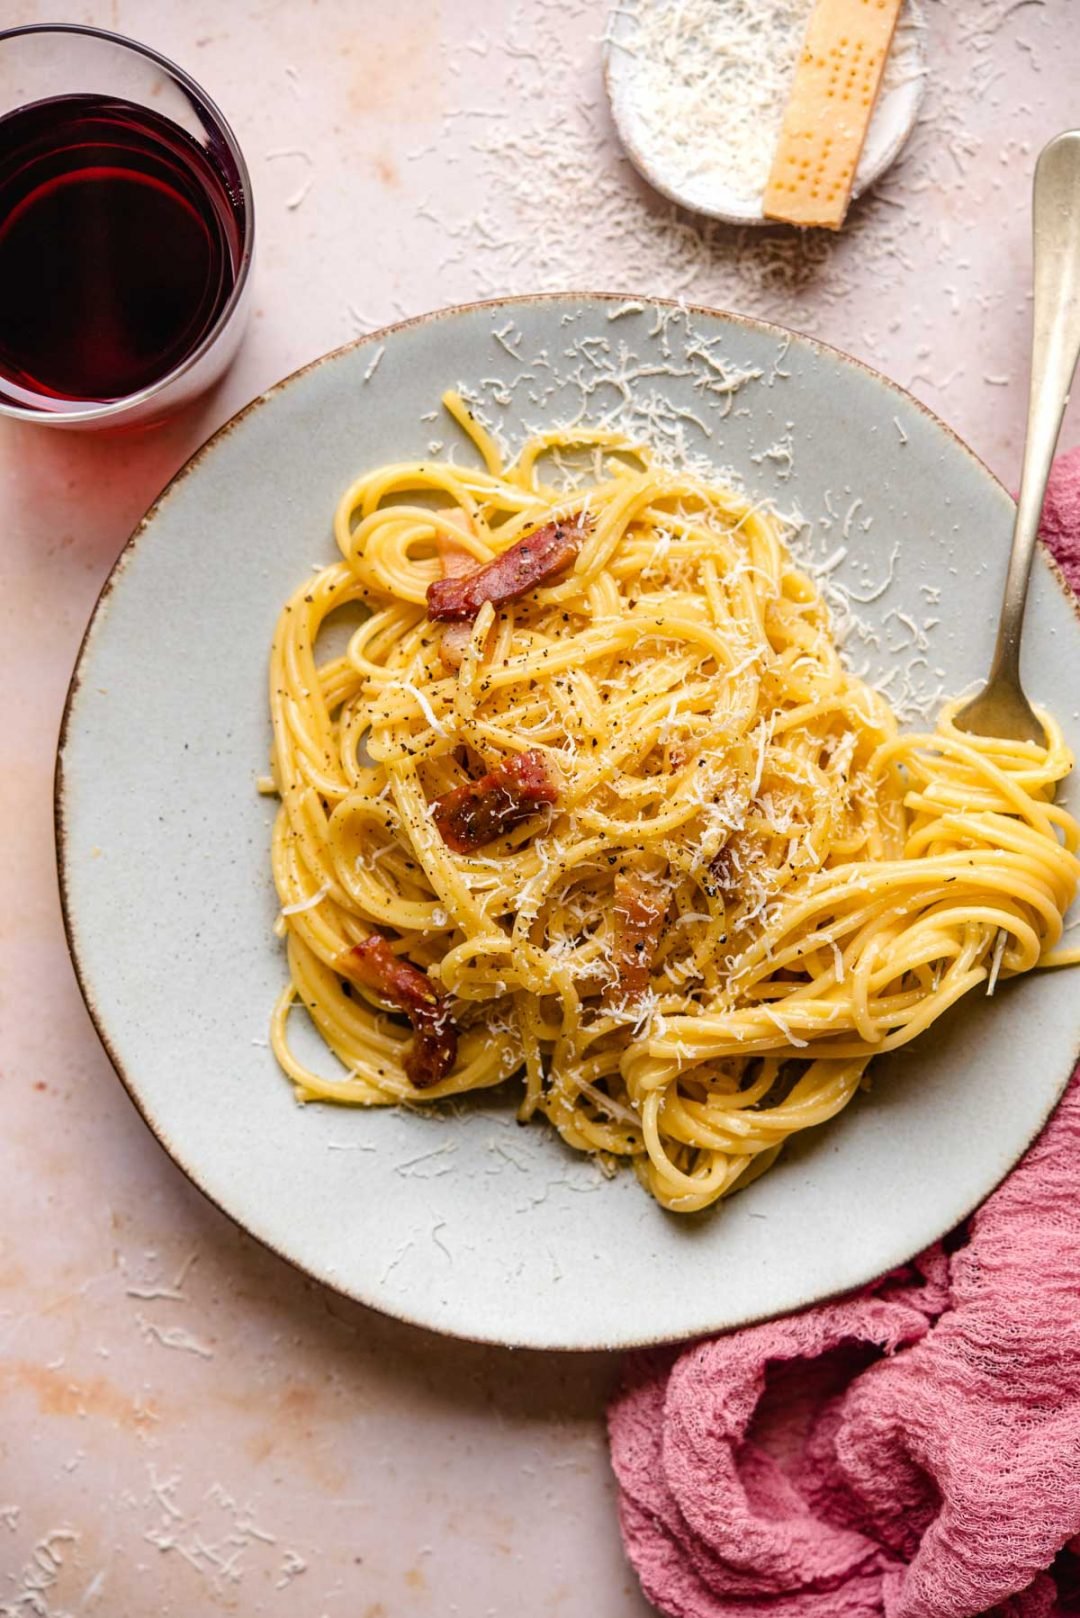 Spaghetti alla Carbonara (Authentic Recipe!) - Inside The Rustic Kitchen